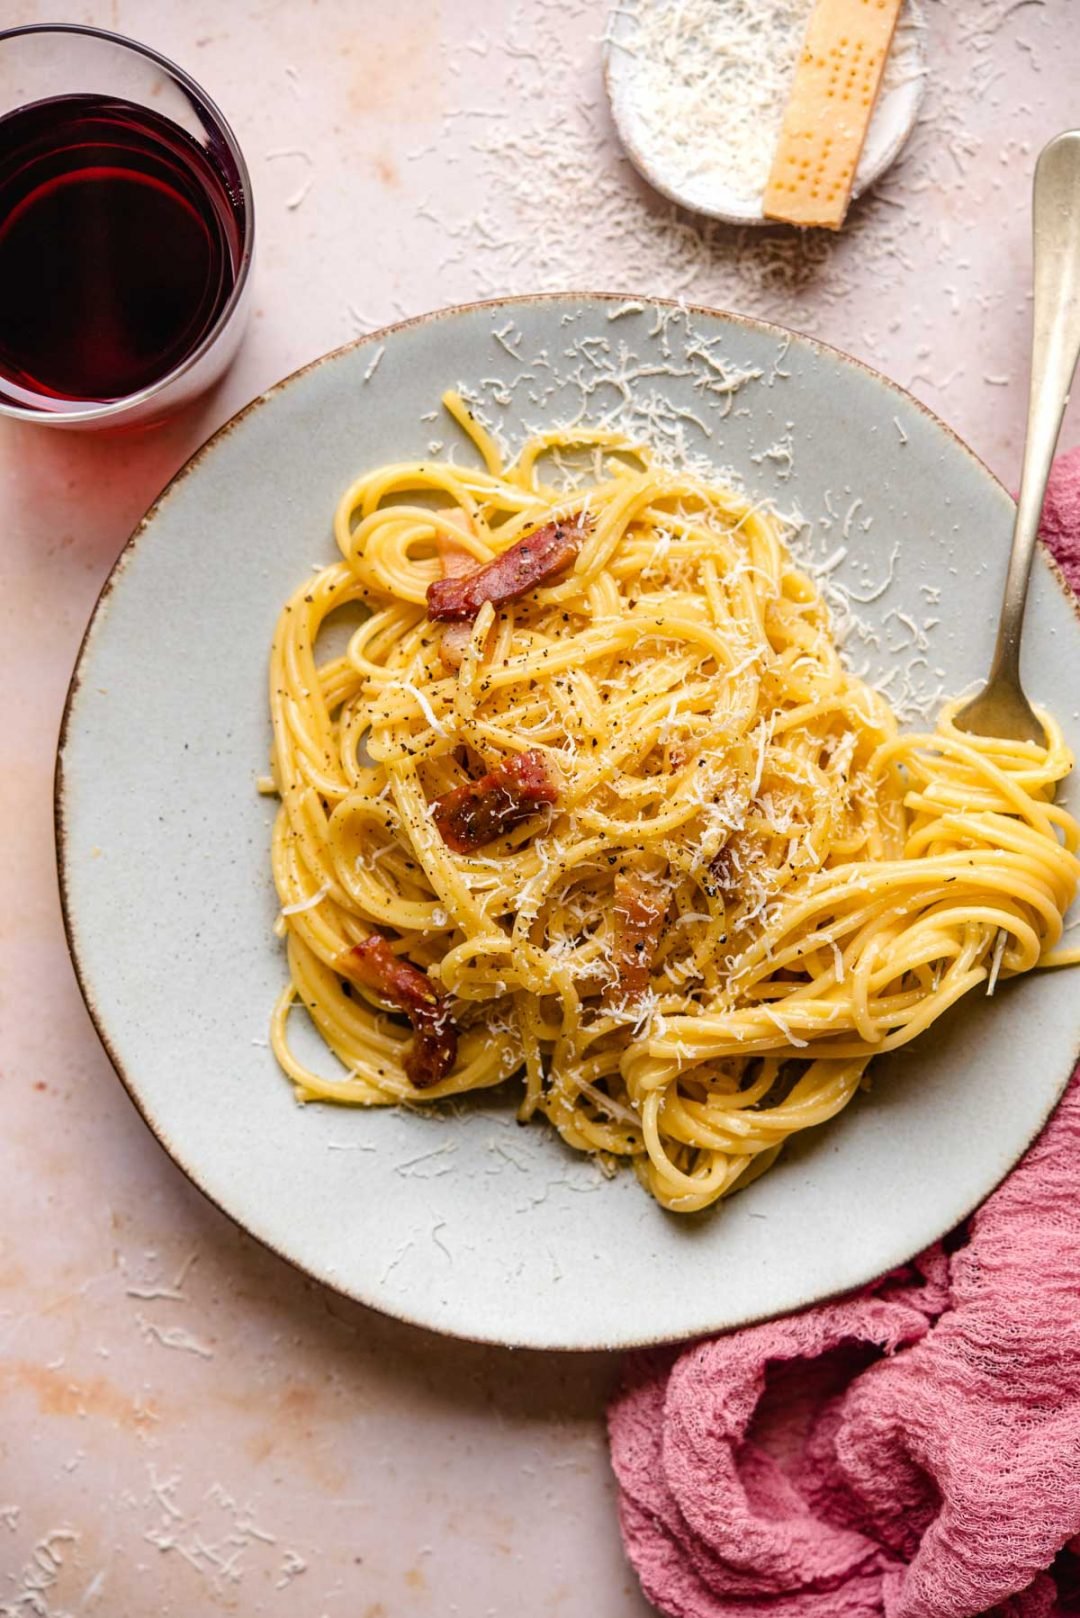 Spaghetti alla Carbonara (Authentic Recipe!) - Inside The Rustic Kitchen